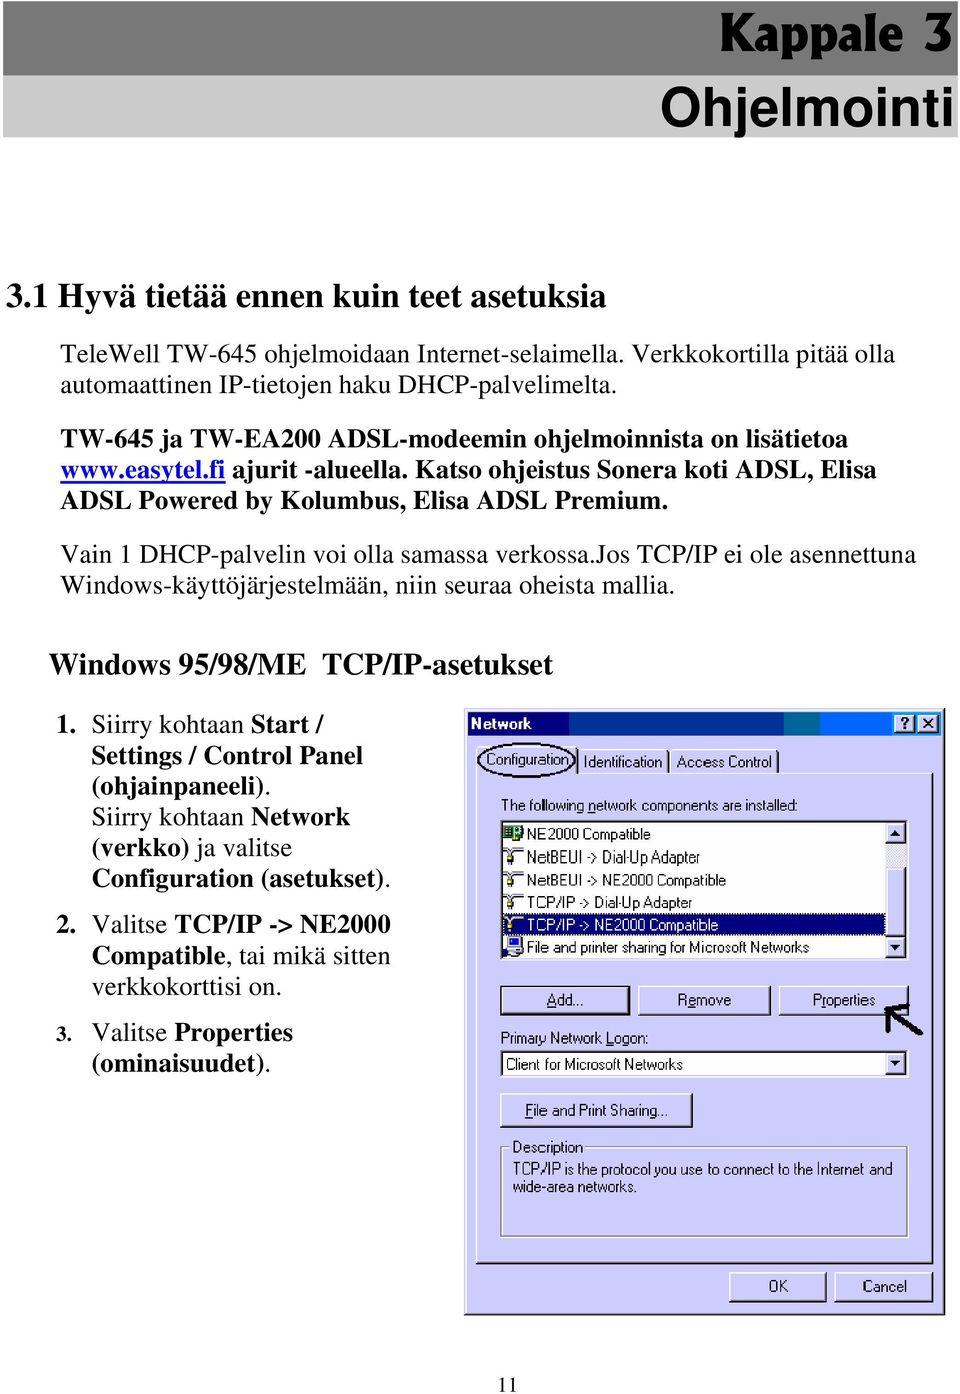 Vain 1 DHCP-palvelin voi olla samassa verkossa.jos TCP/IP ei ole asennettuna Windows-käyttöjärjestelmään, niin seuraa oheista mallia. Windows 95/98/ME TCP/IP-asetukset 1.